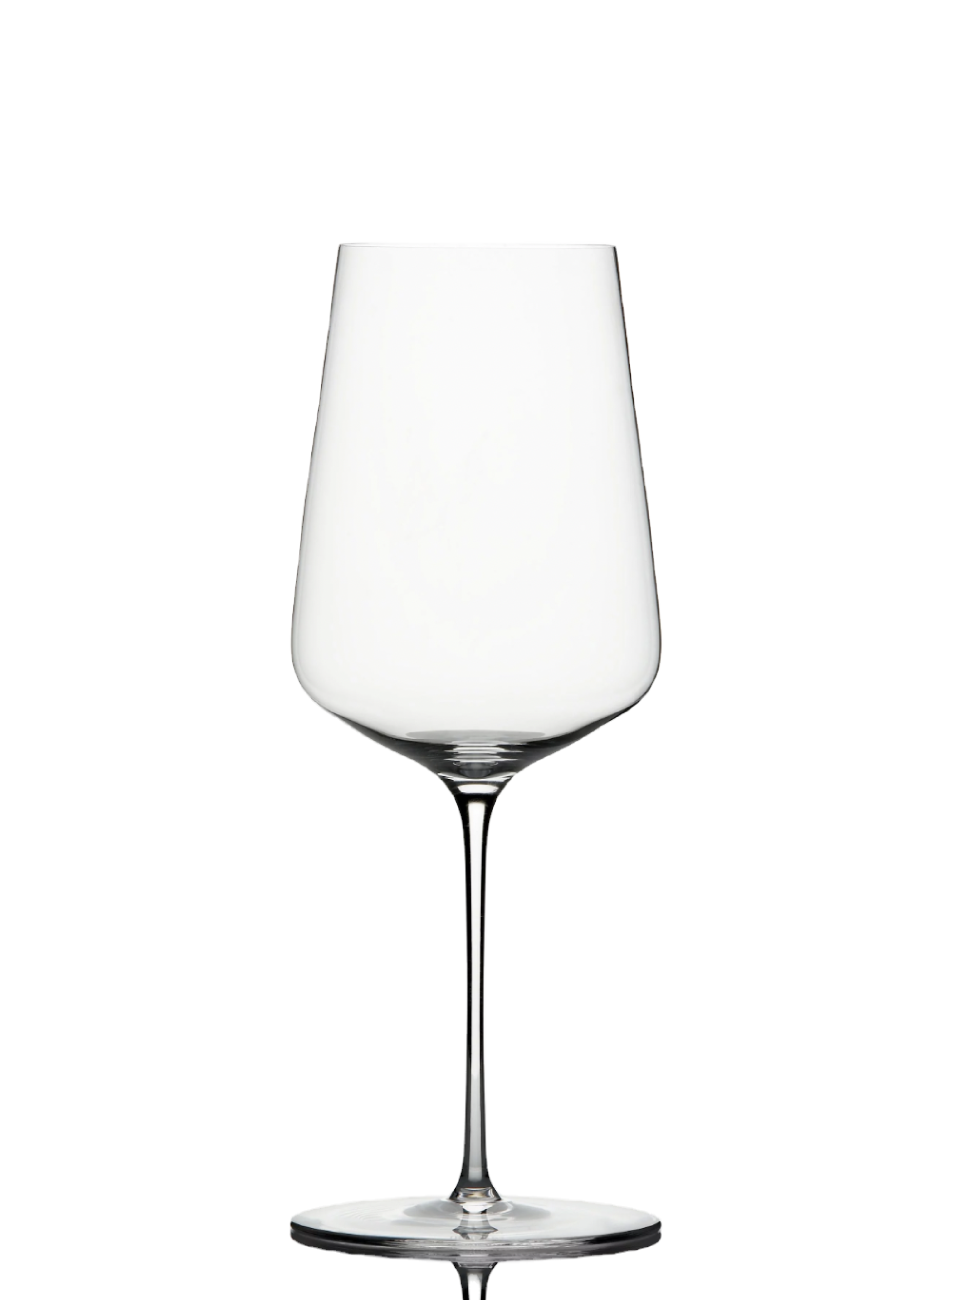 Zalto Universal Wine Glass [GGDRK0003]